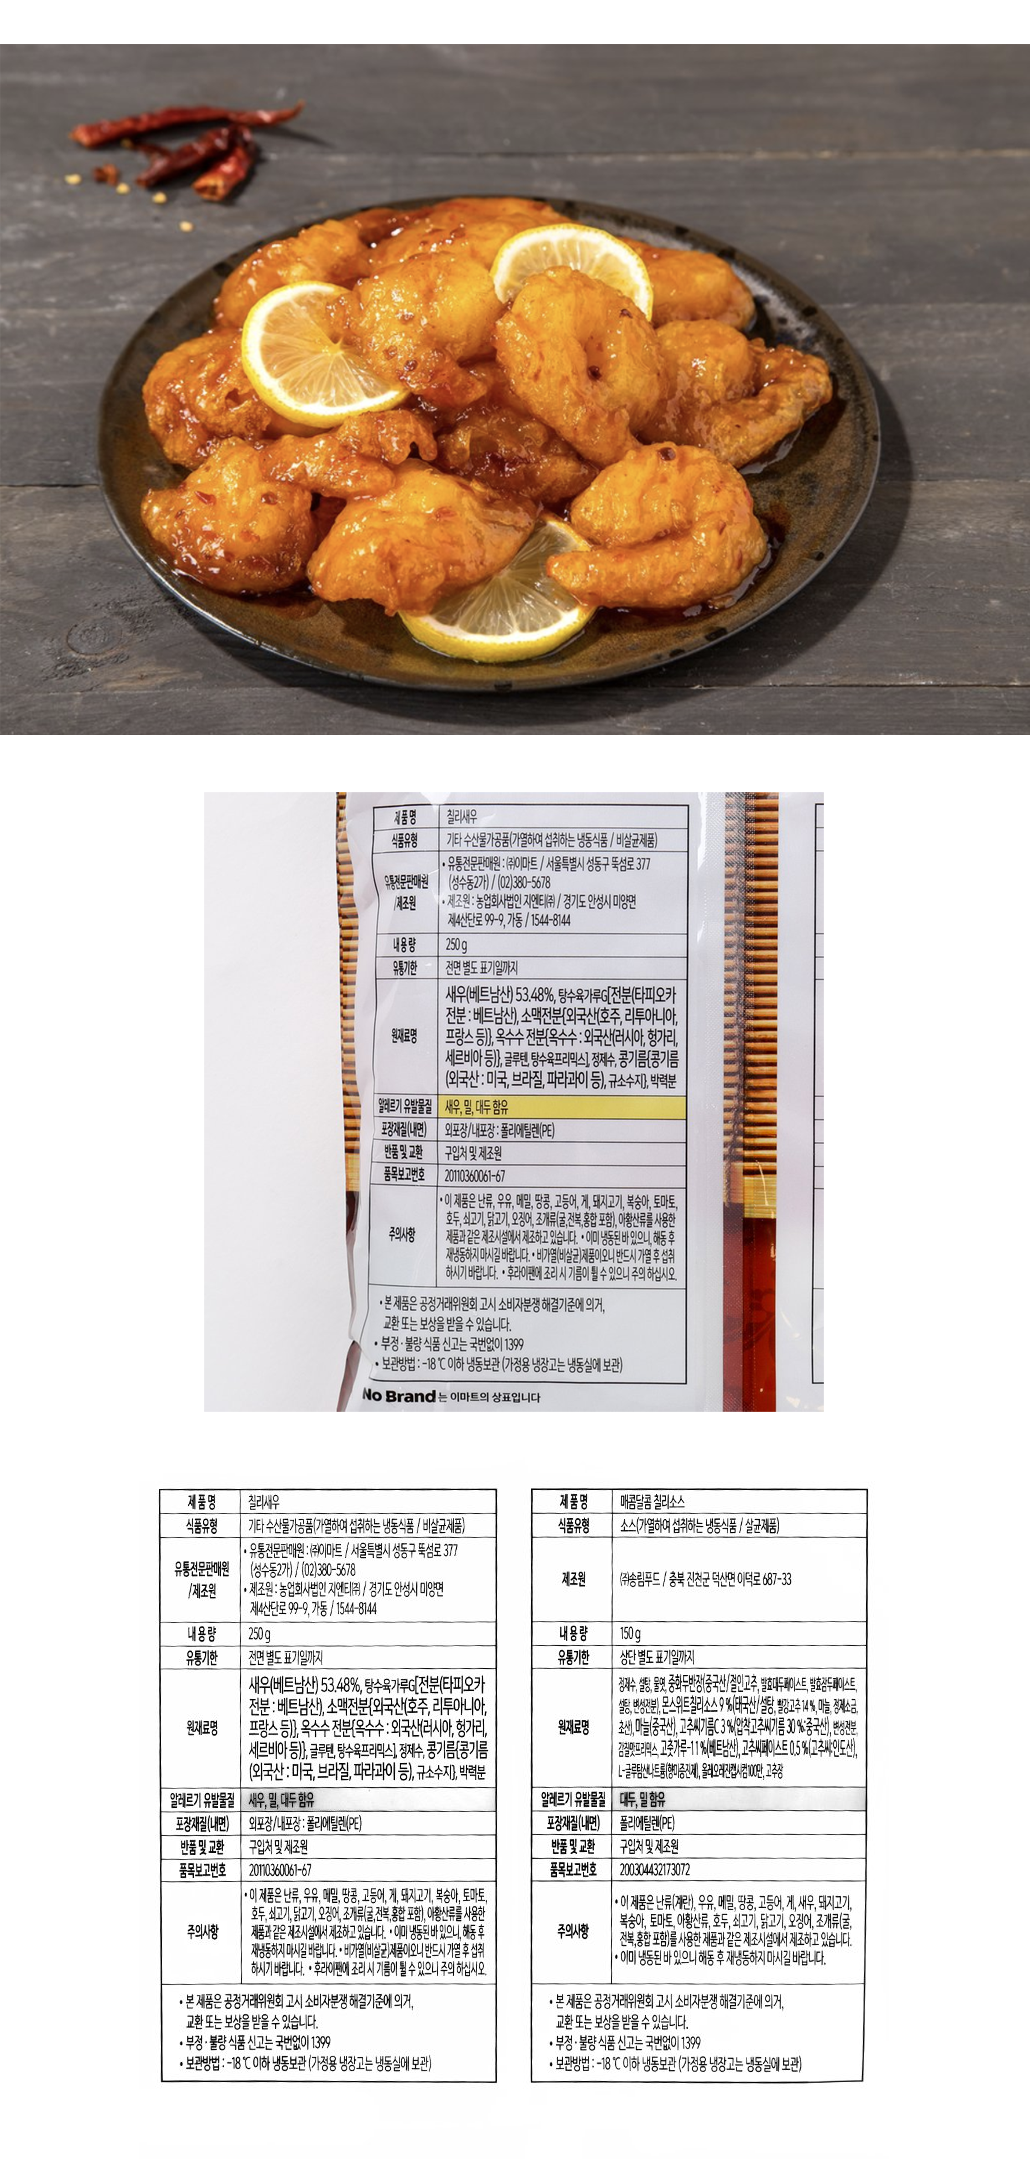 韓國食品-[No Brand] Fried Shrimp with Chili Sauce 400g